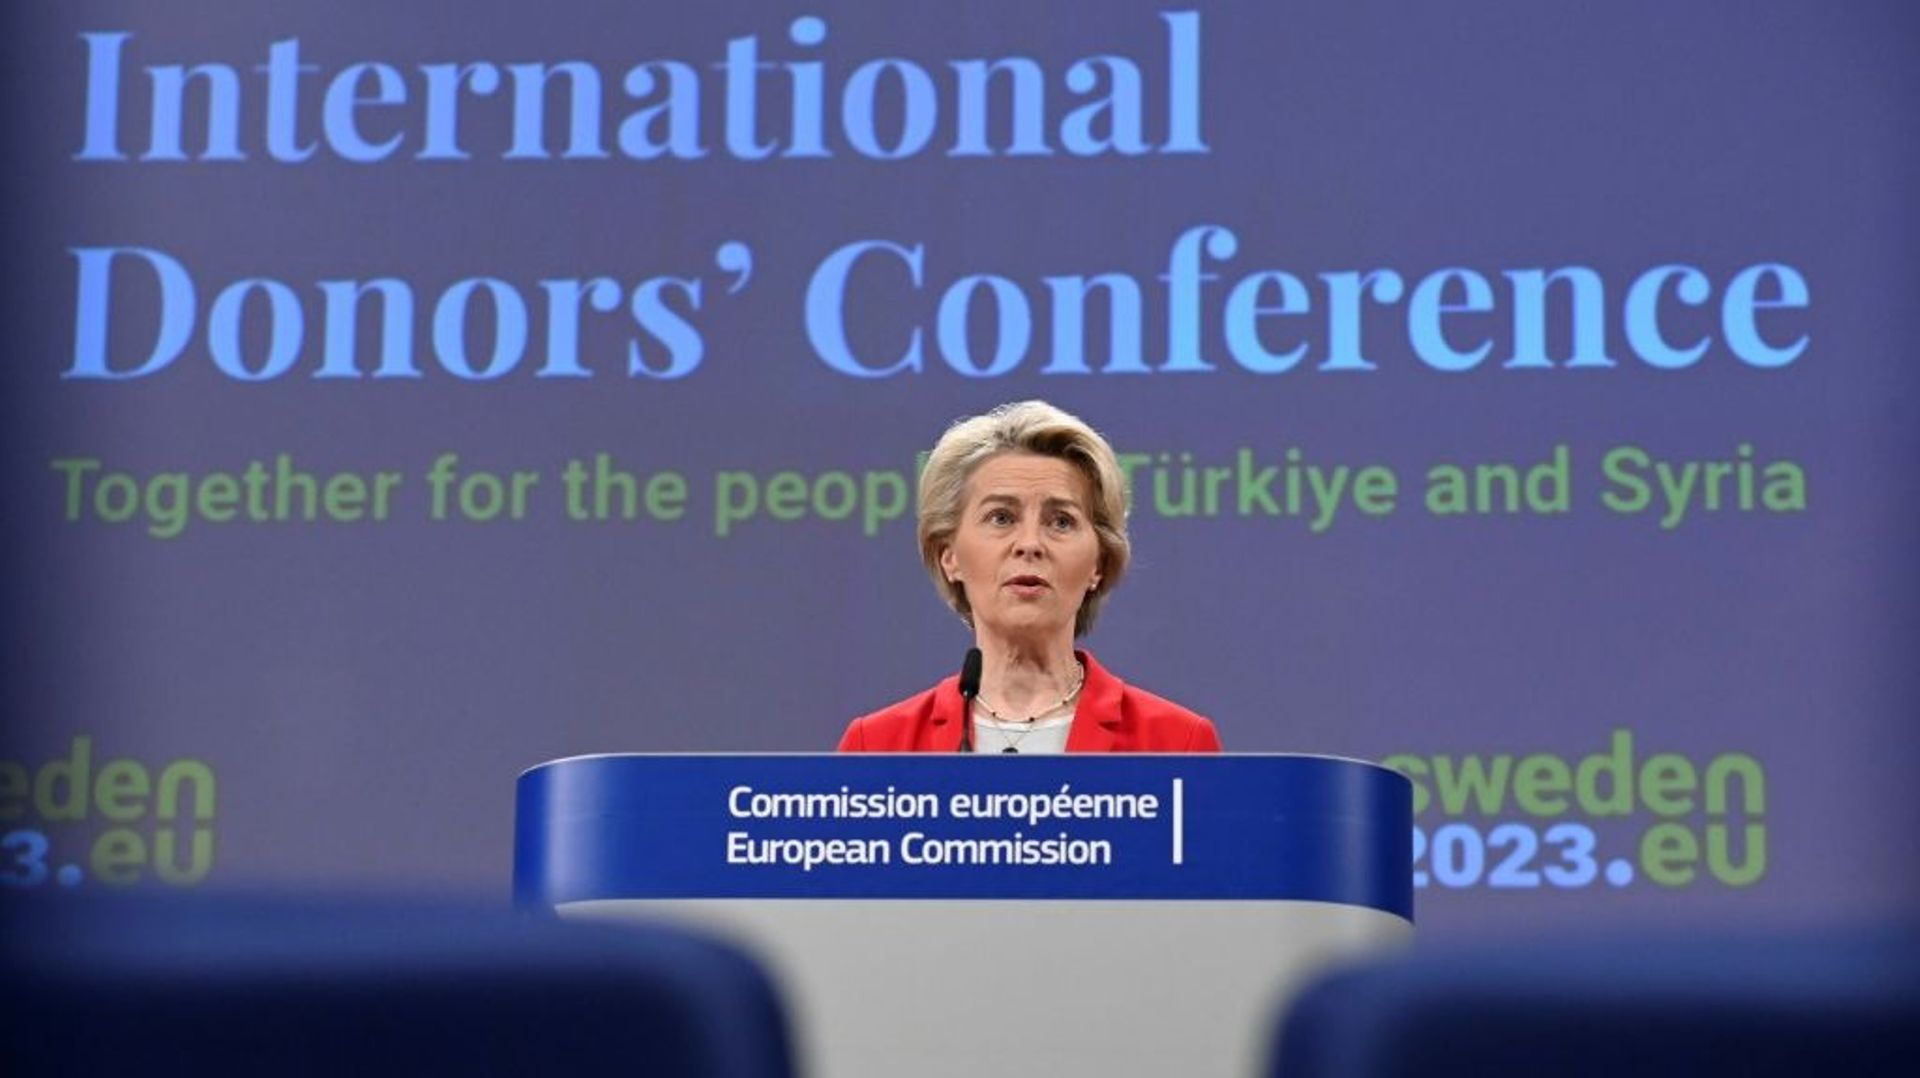 La présidente de la Commission européenne, Ursula von der Leyen, en conférence de presse à l’issue d’une conférence des donateurs après les séismes en Turquie et en Syrie, à Bruxelles, le 20 mars 2023